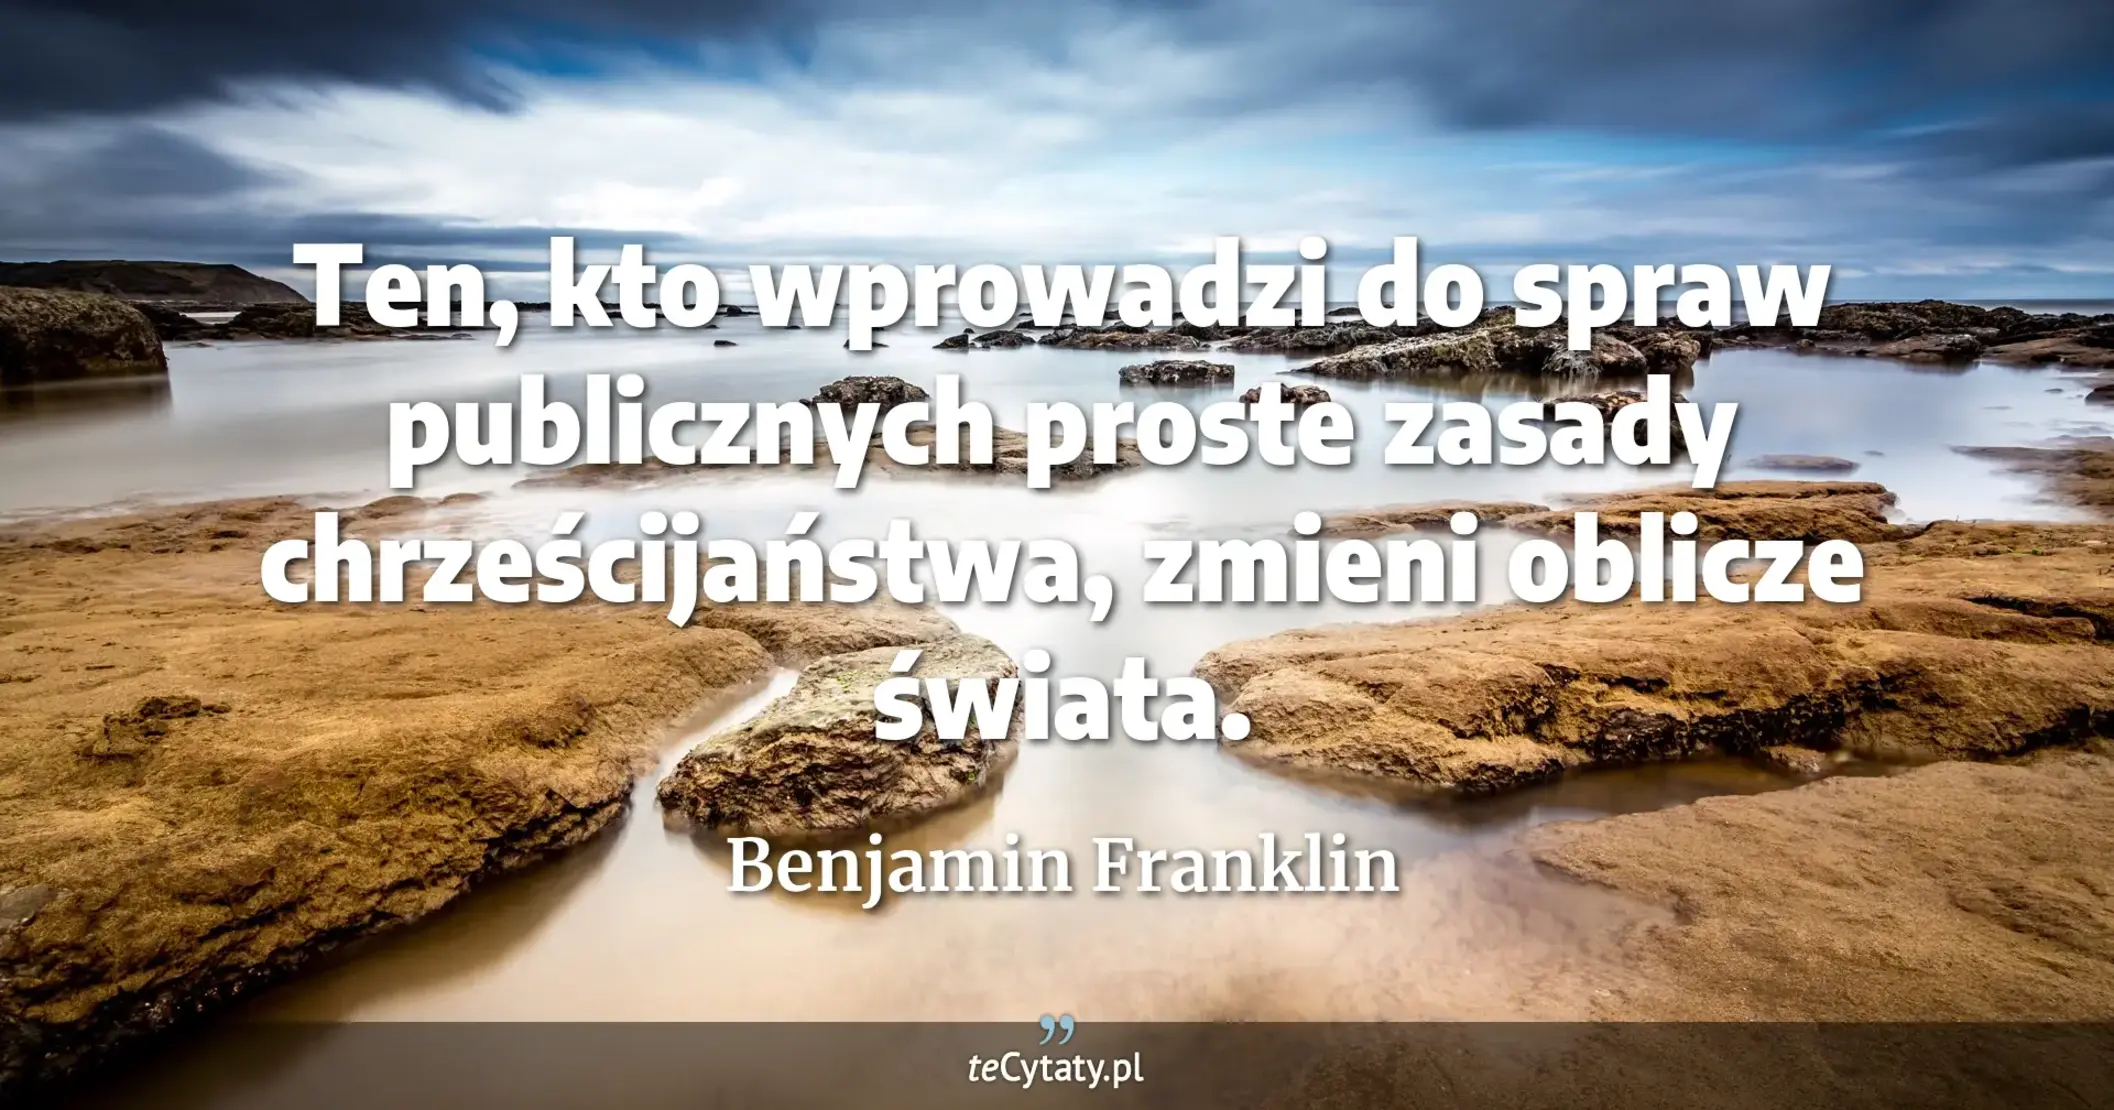 Ten, kto wprowadzi do spraw publicznych proste zasady chrześcijaństwa, zmieni oblicze świata. - Benjamin Franklin